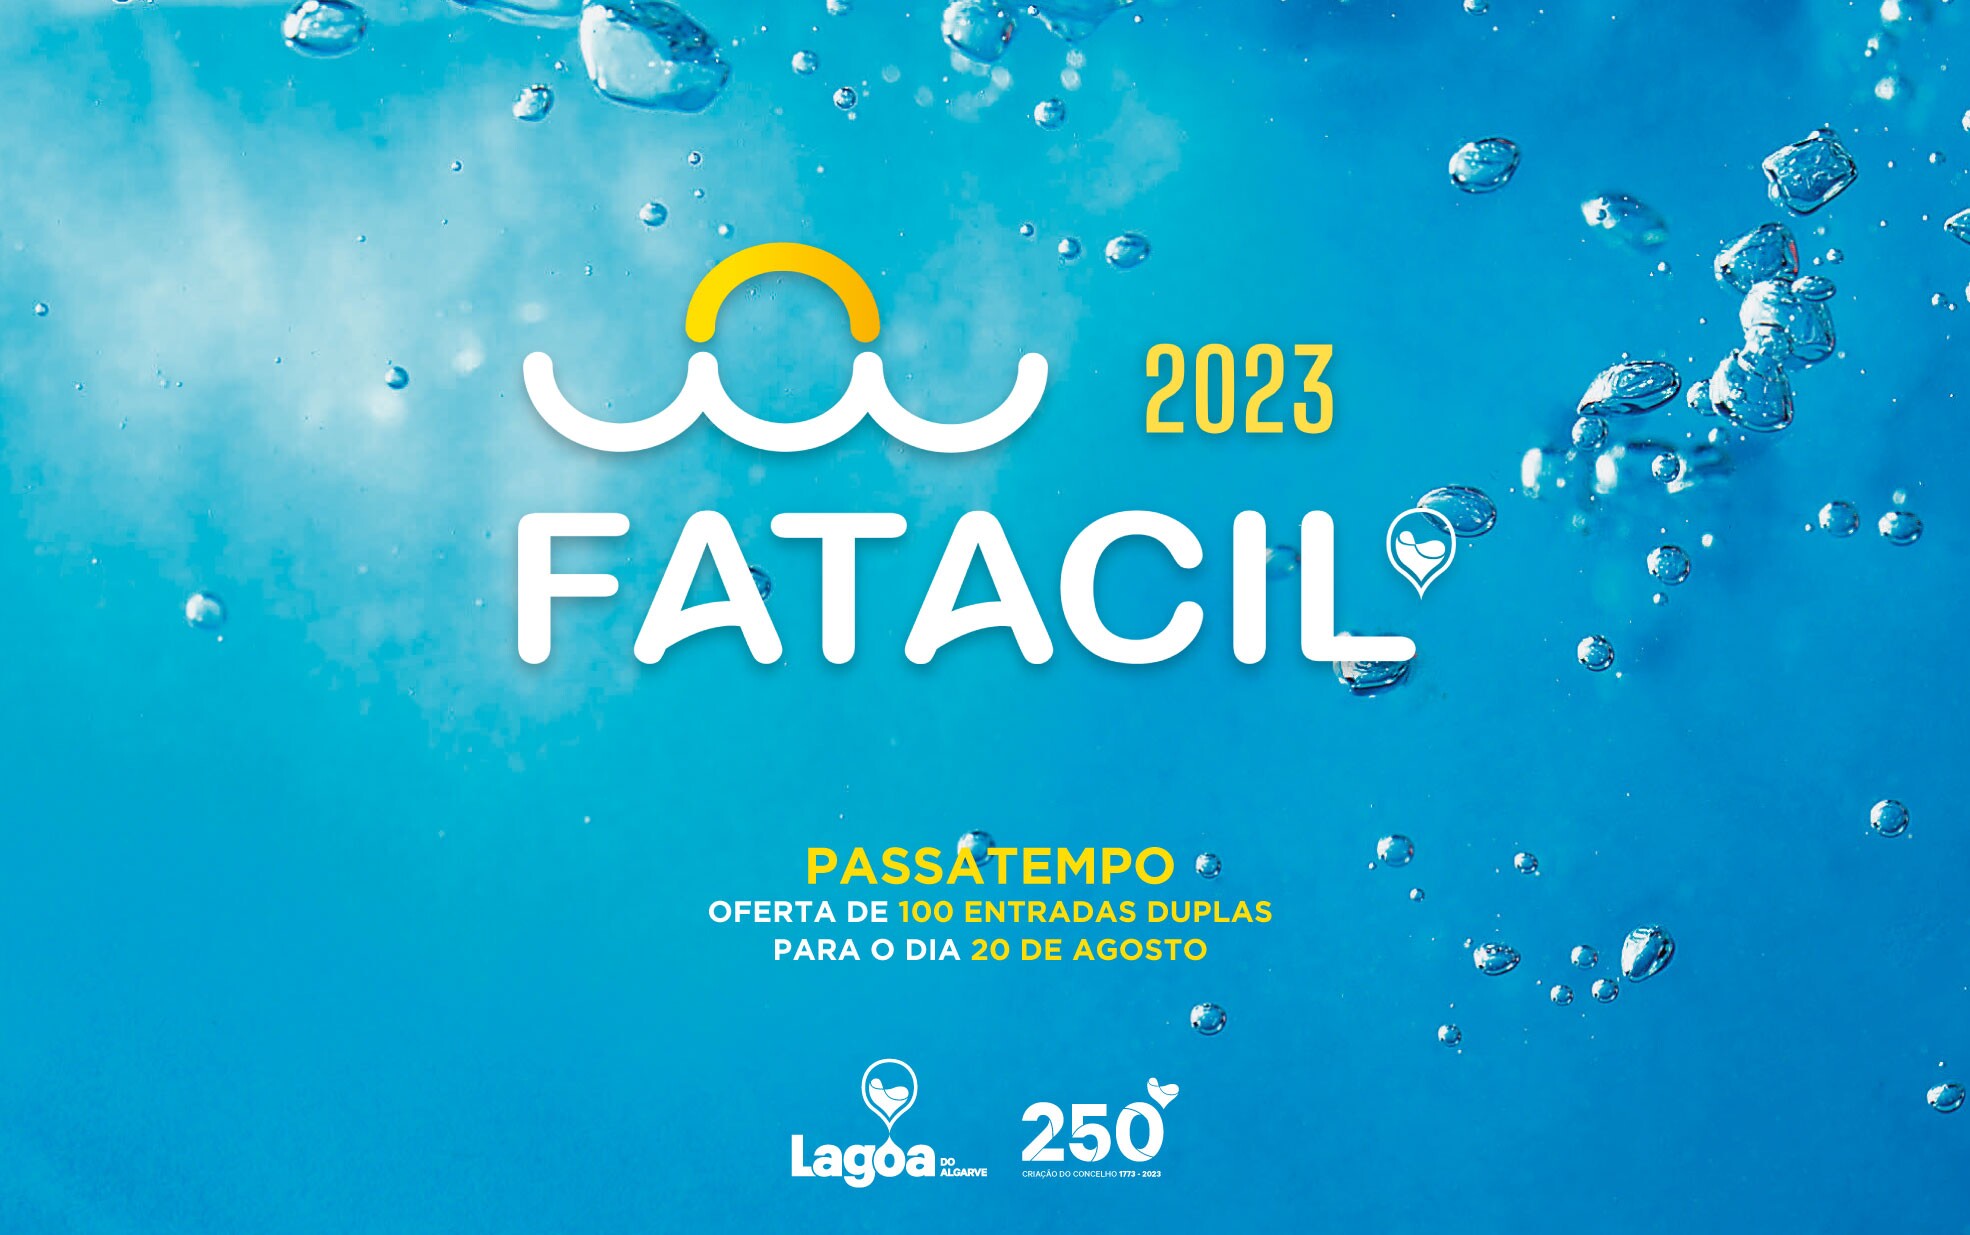 Município de Lagoa tem 100 entradas duplas para o dia 20 de Agosto na Fatacil - 2ª edição